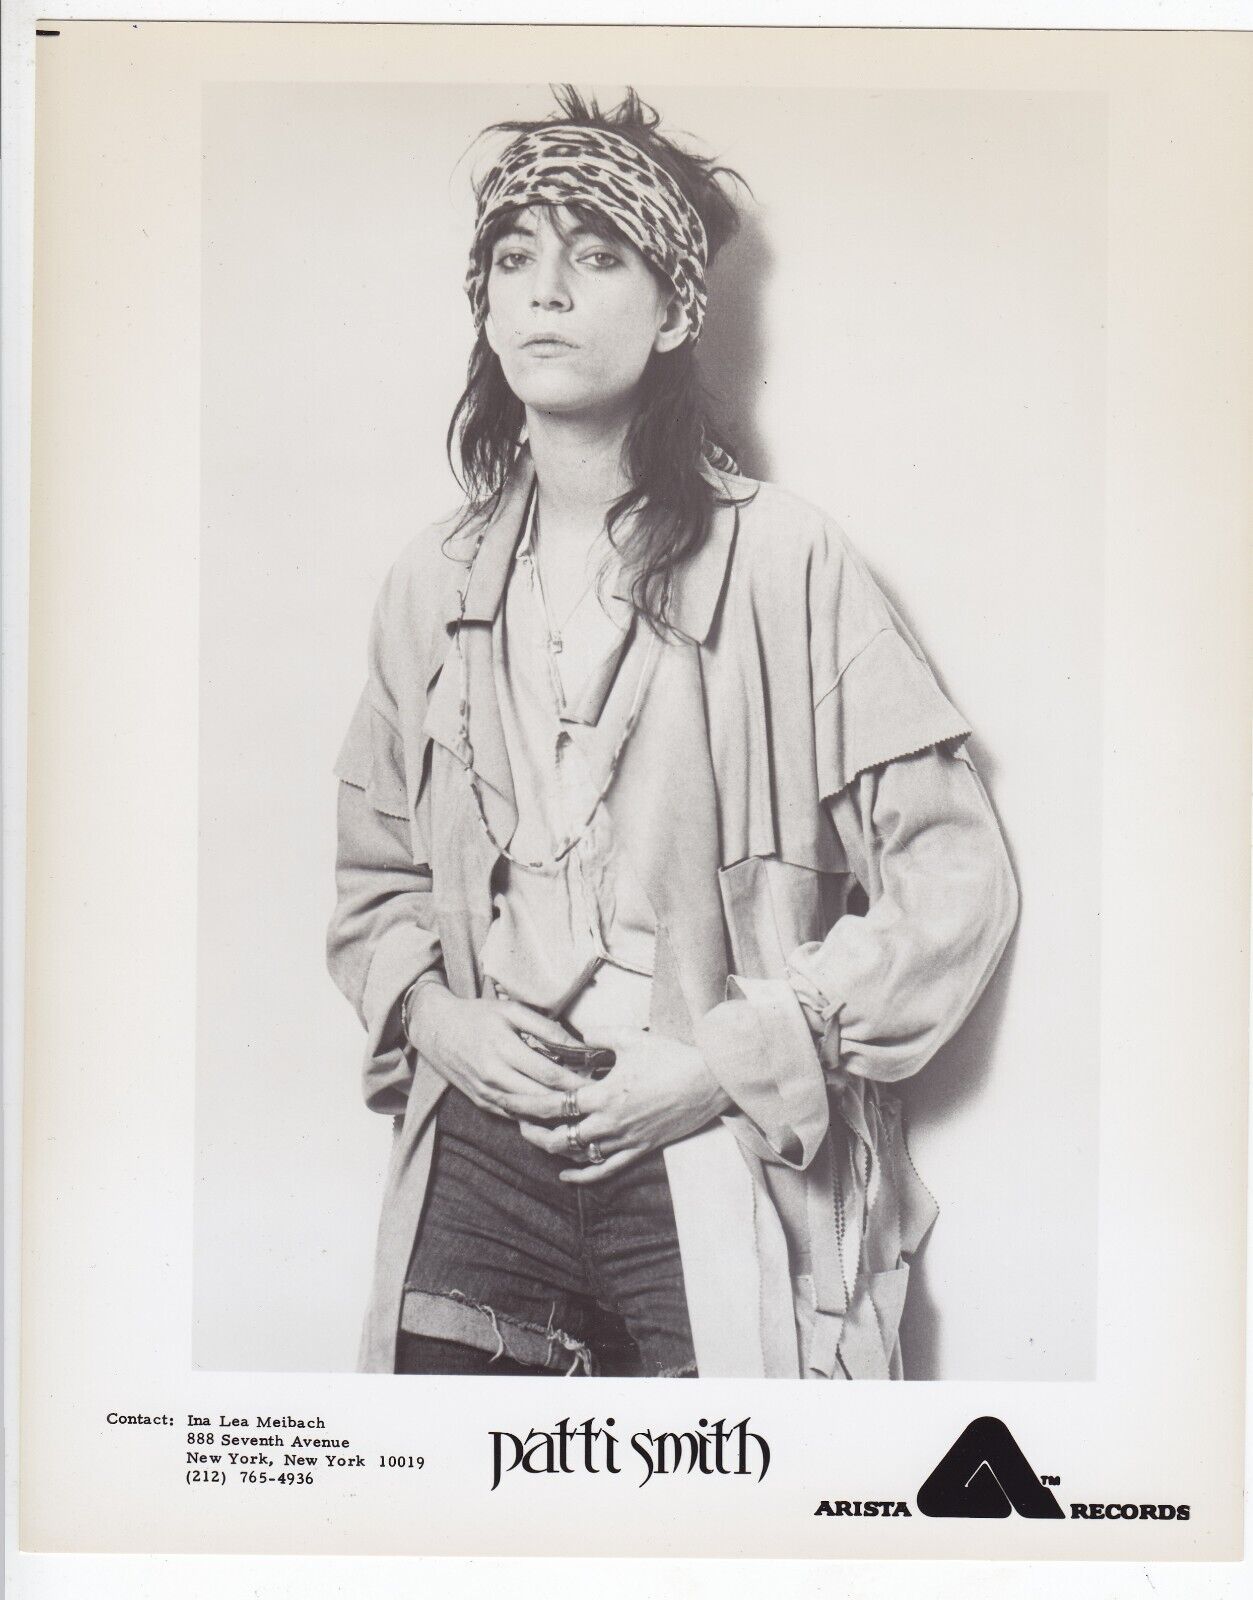 1978 Press Photo Punk Rock Singer Patti Smith Poses for a Record Album